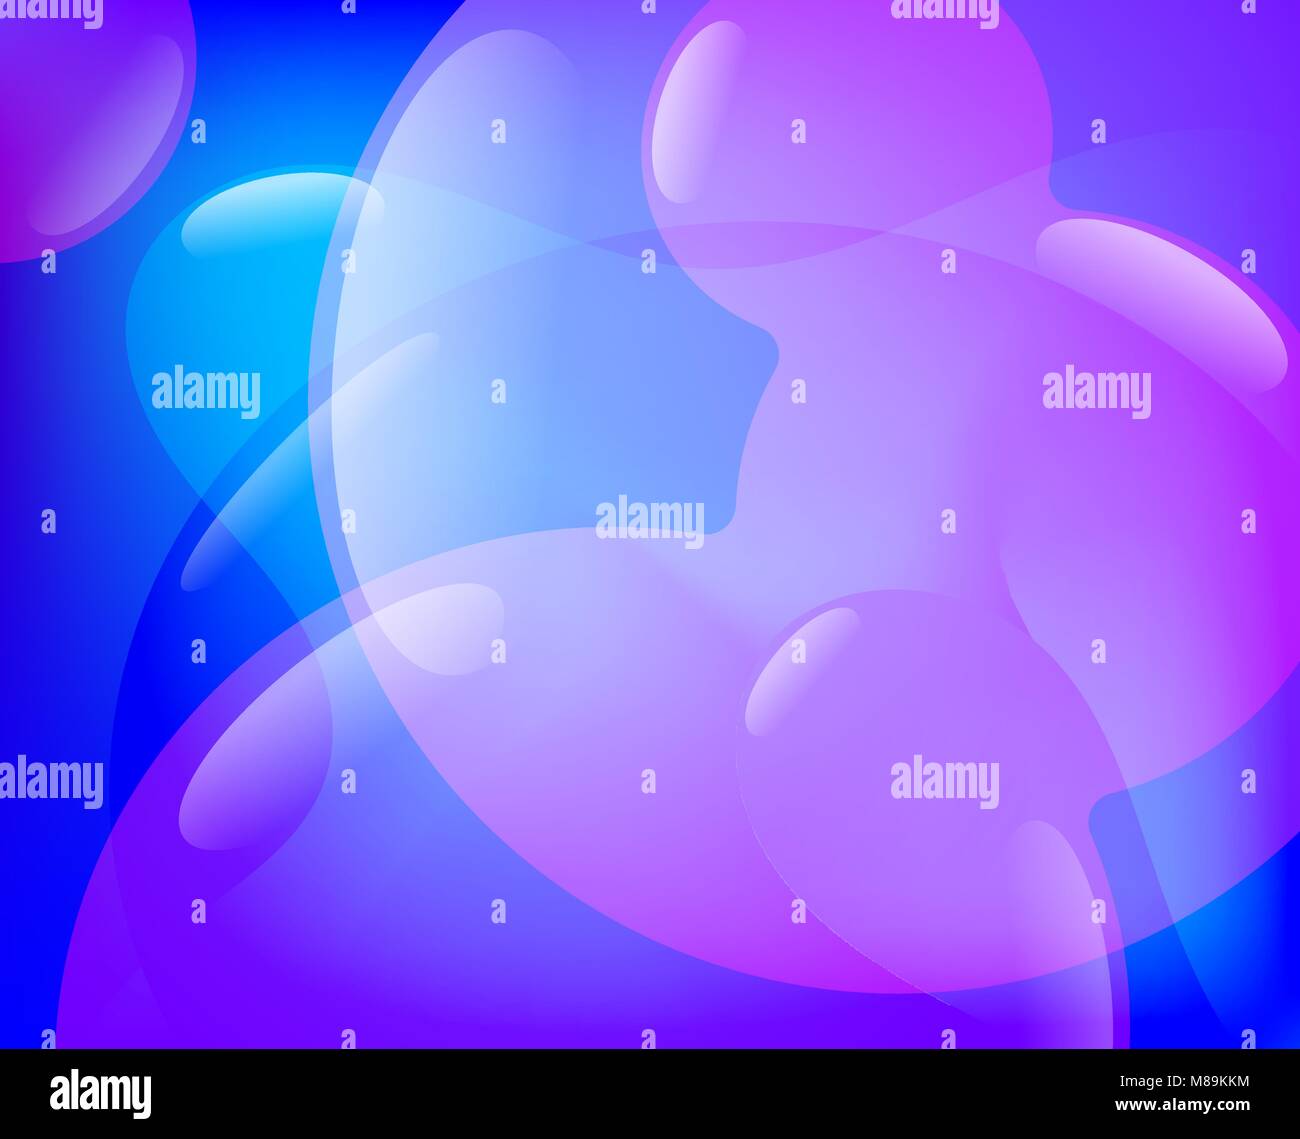 Zusammenfassung Hintergrund mit Blasen und flüssige farbigen Formen Stock Vektor